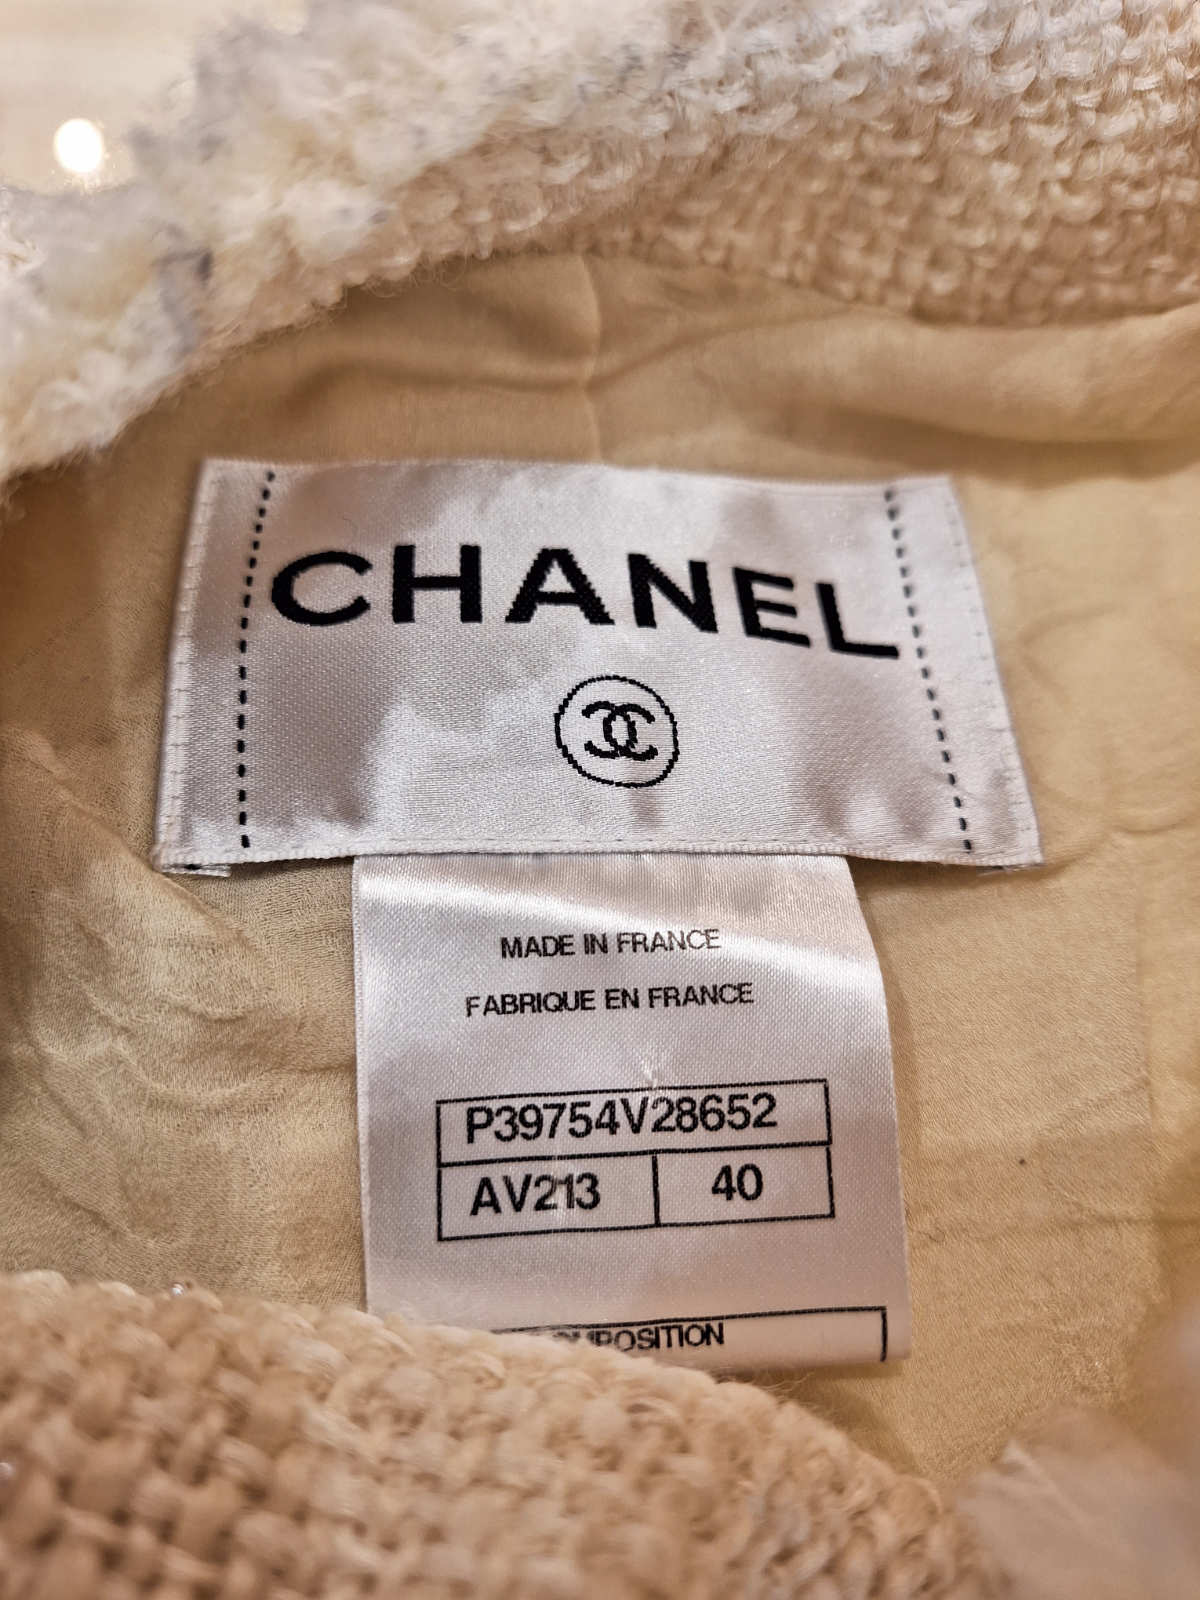 Chanel Blazer, cremefarben, Größe 40, neuwertig, mit Fransen und Doppelknopf, Logo.